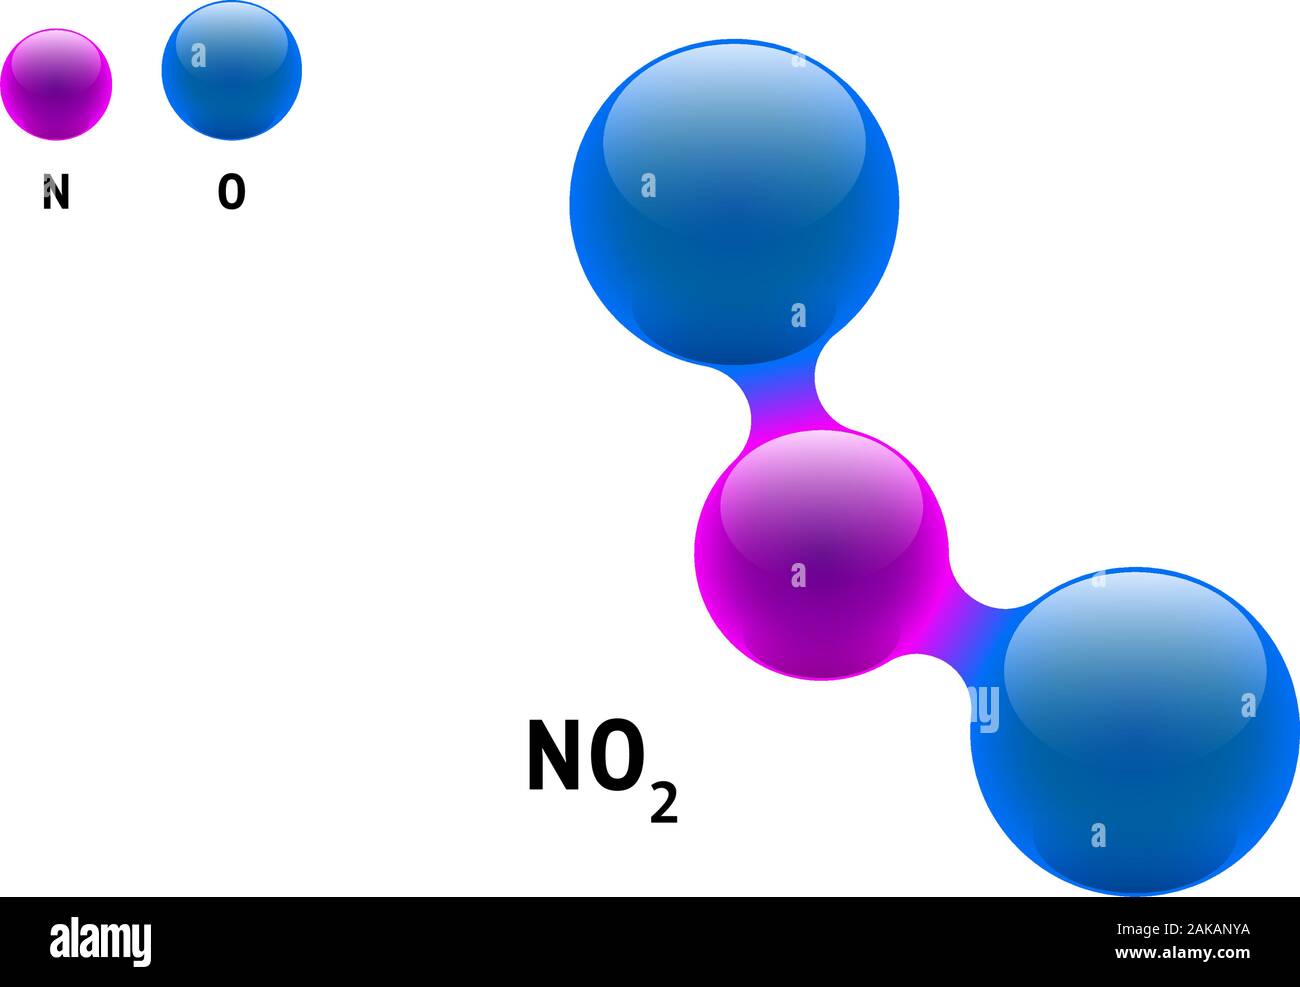 Chemie-Modell Molekül Stickstoffdioxid NO2 wissenschaftliche Element Formel. Integrierte Partikel natürliche anorganische 3d-Molekülstruktur bestehend. Zwei Sauerstoff- und Azot-Volumen-Atom eps-Vektorkugeln Stock Vektor